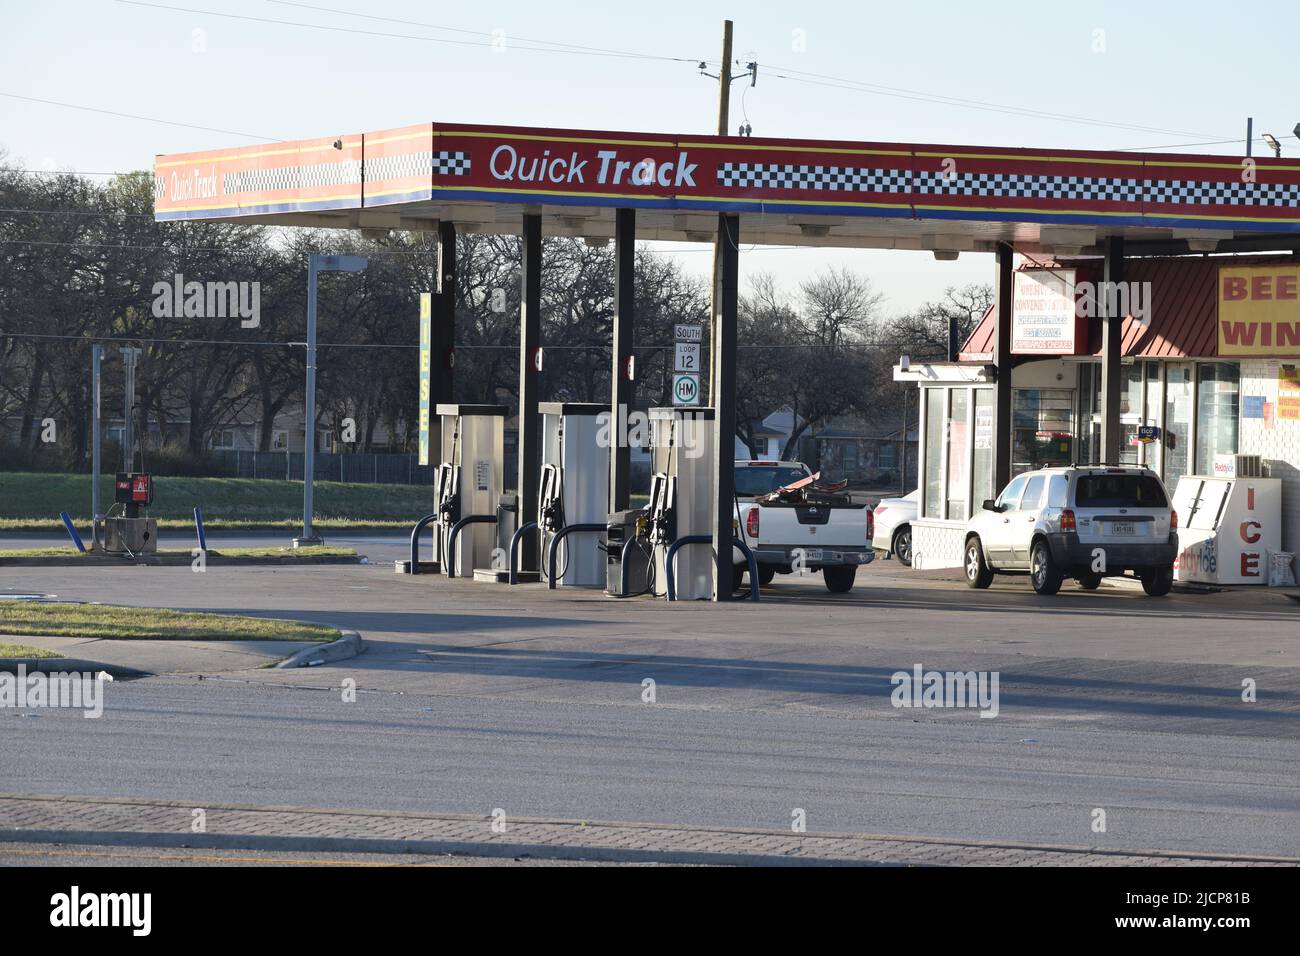 Prendre un camion stationné aux pompes à gaz d'une station-service Quick Track Banque D'Images